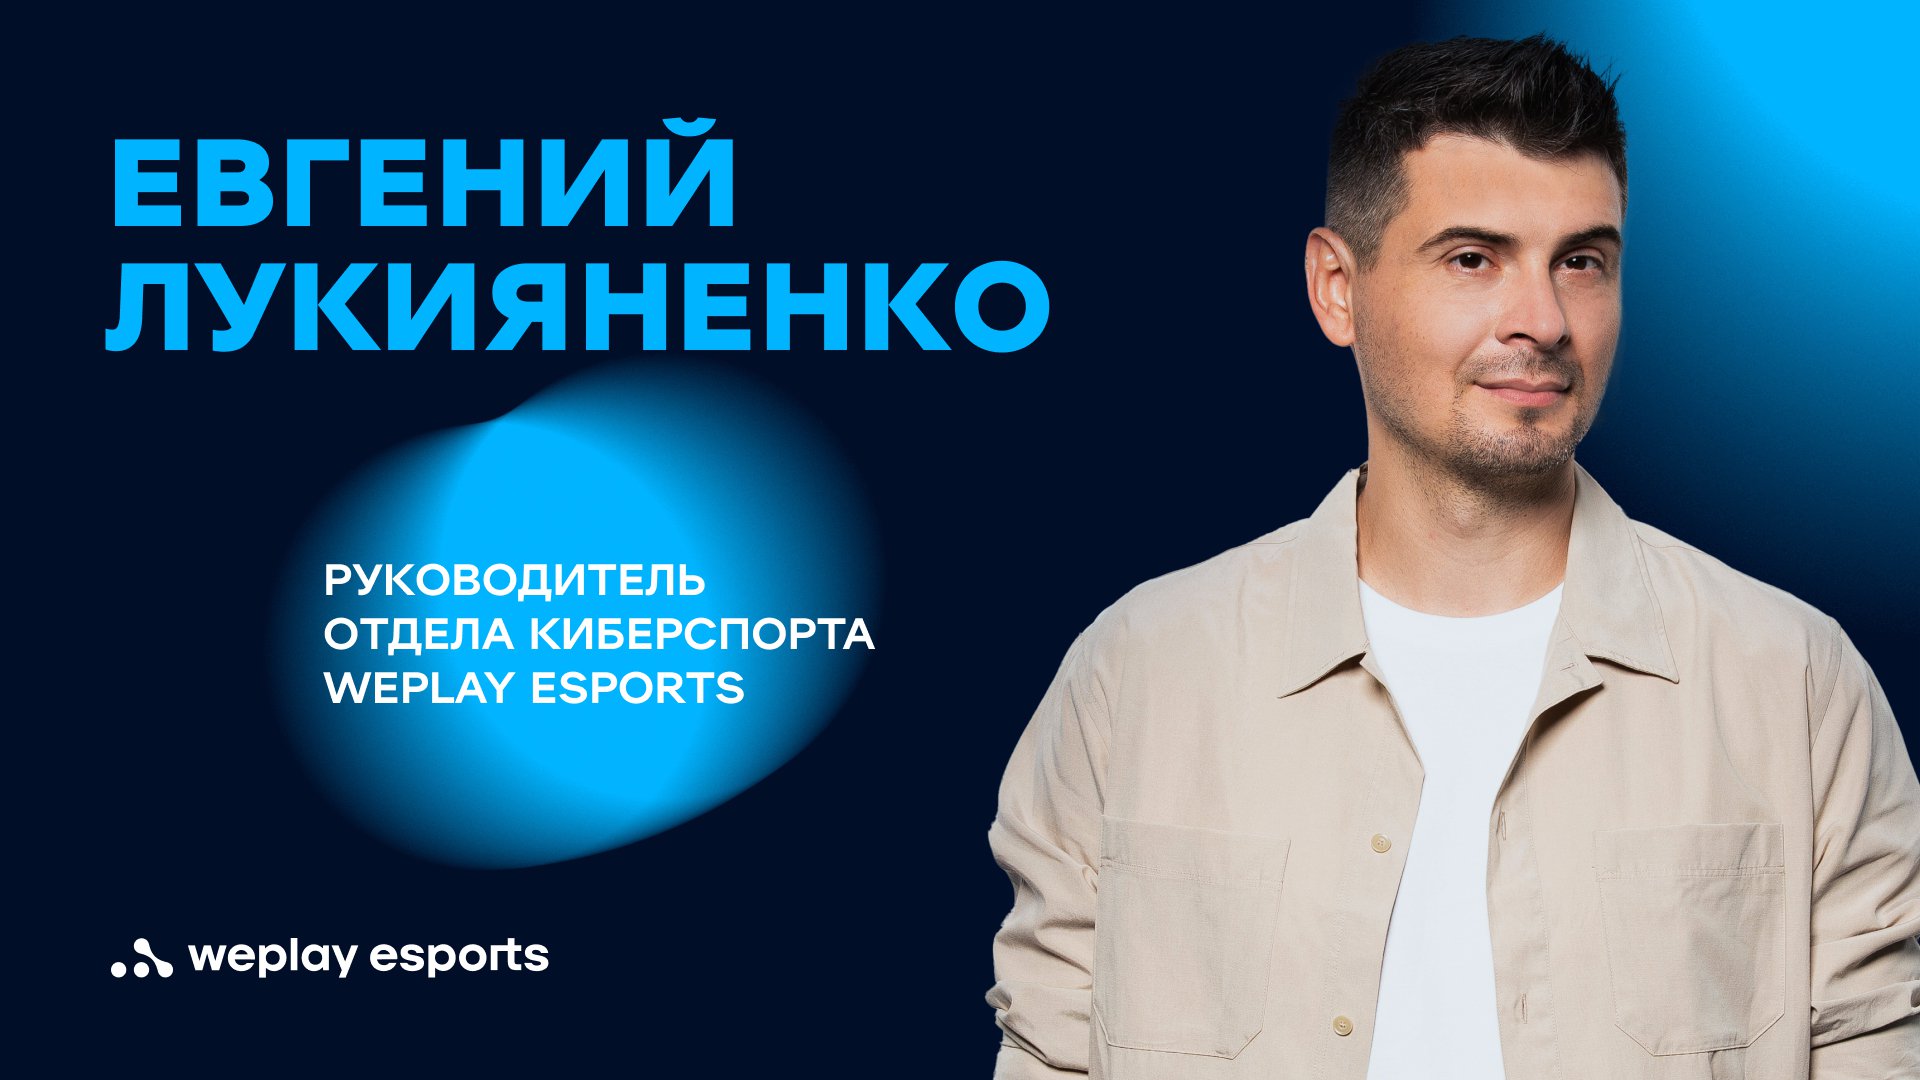 Евгений Лукияненко, руководитель отдела киберспорта WePlay Esports